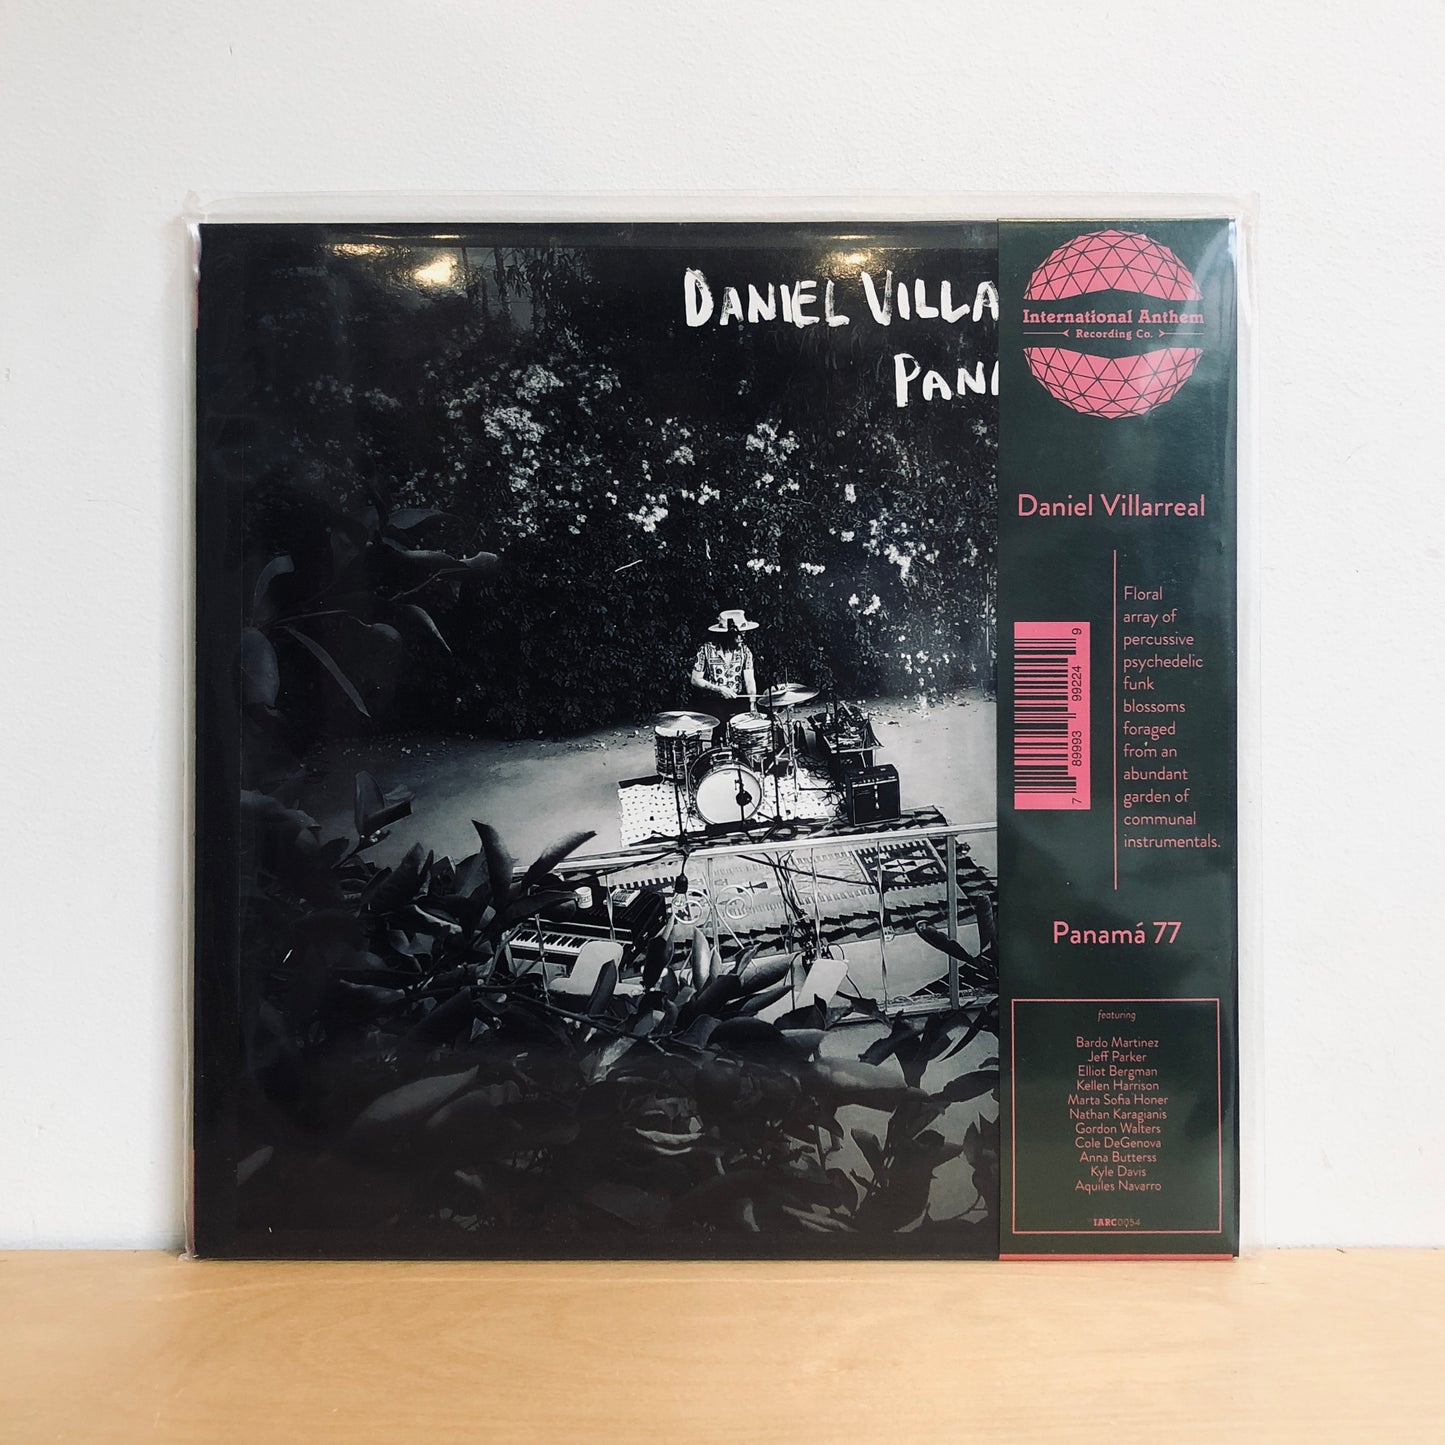 Daniel Villarreal - Panama '77. LP